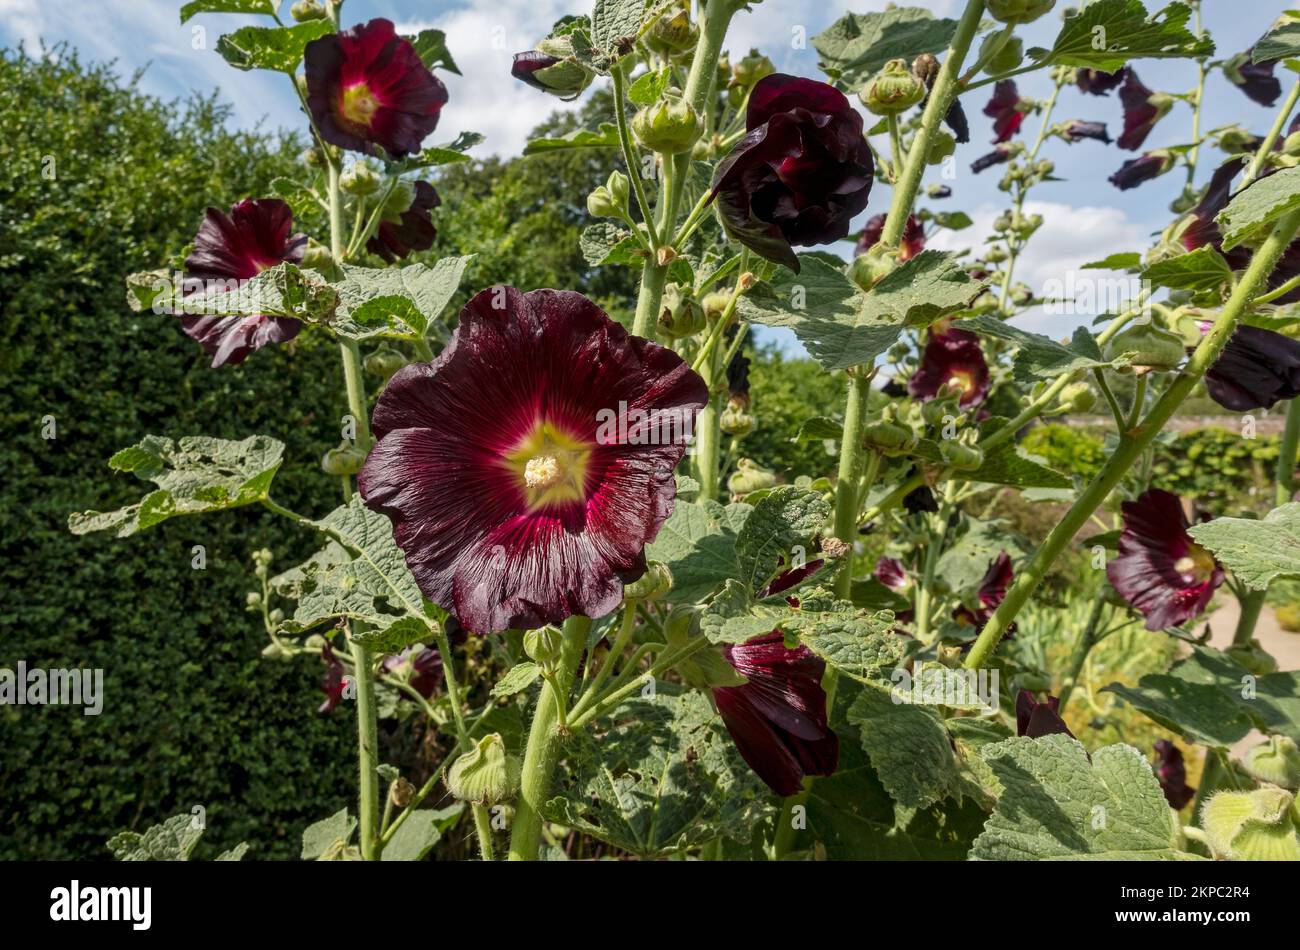 Gros plan de hollyhock rouge foncé hollyhocks fleurs alecea rosea croissant dans un jardin de chalet frontière en été Angleterre Royaume-Uni Banque D'Images